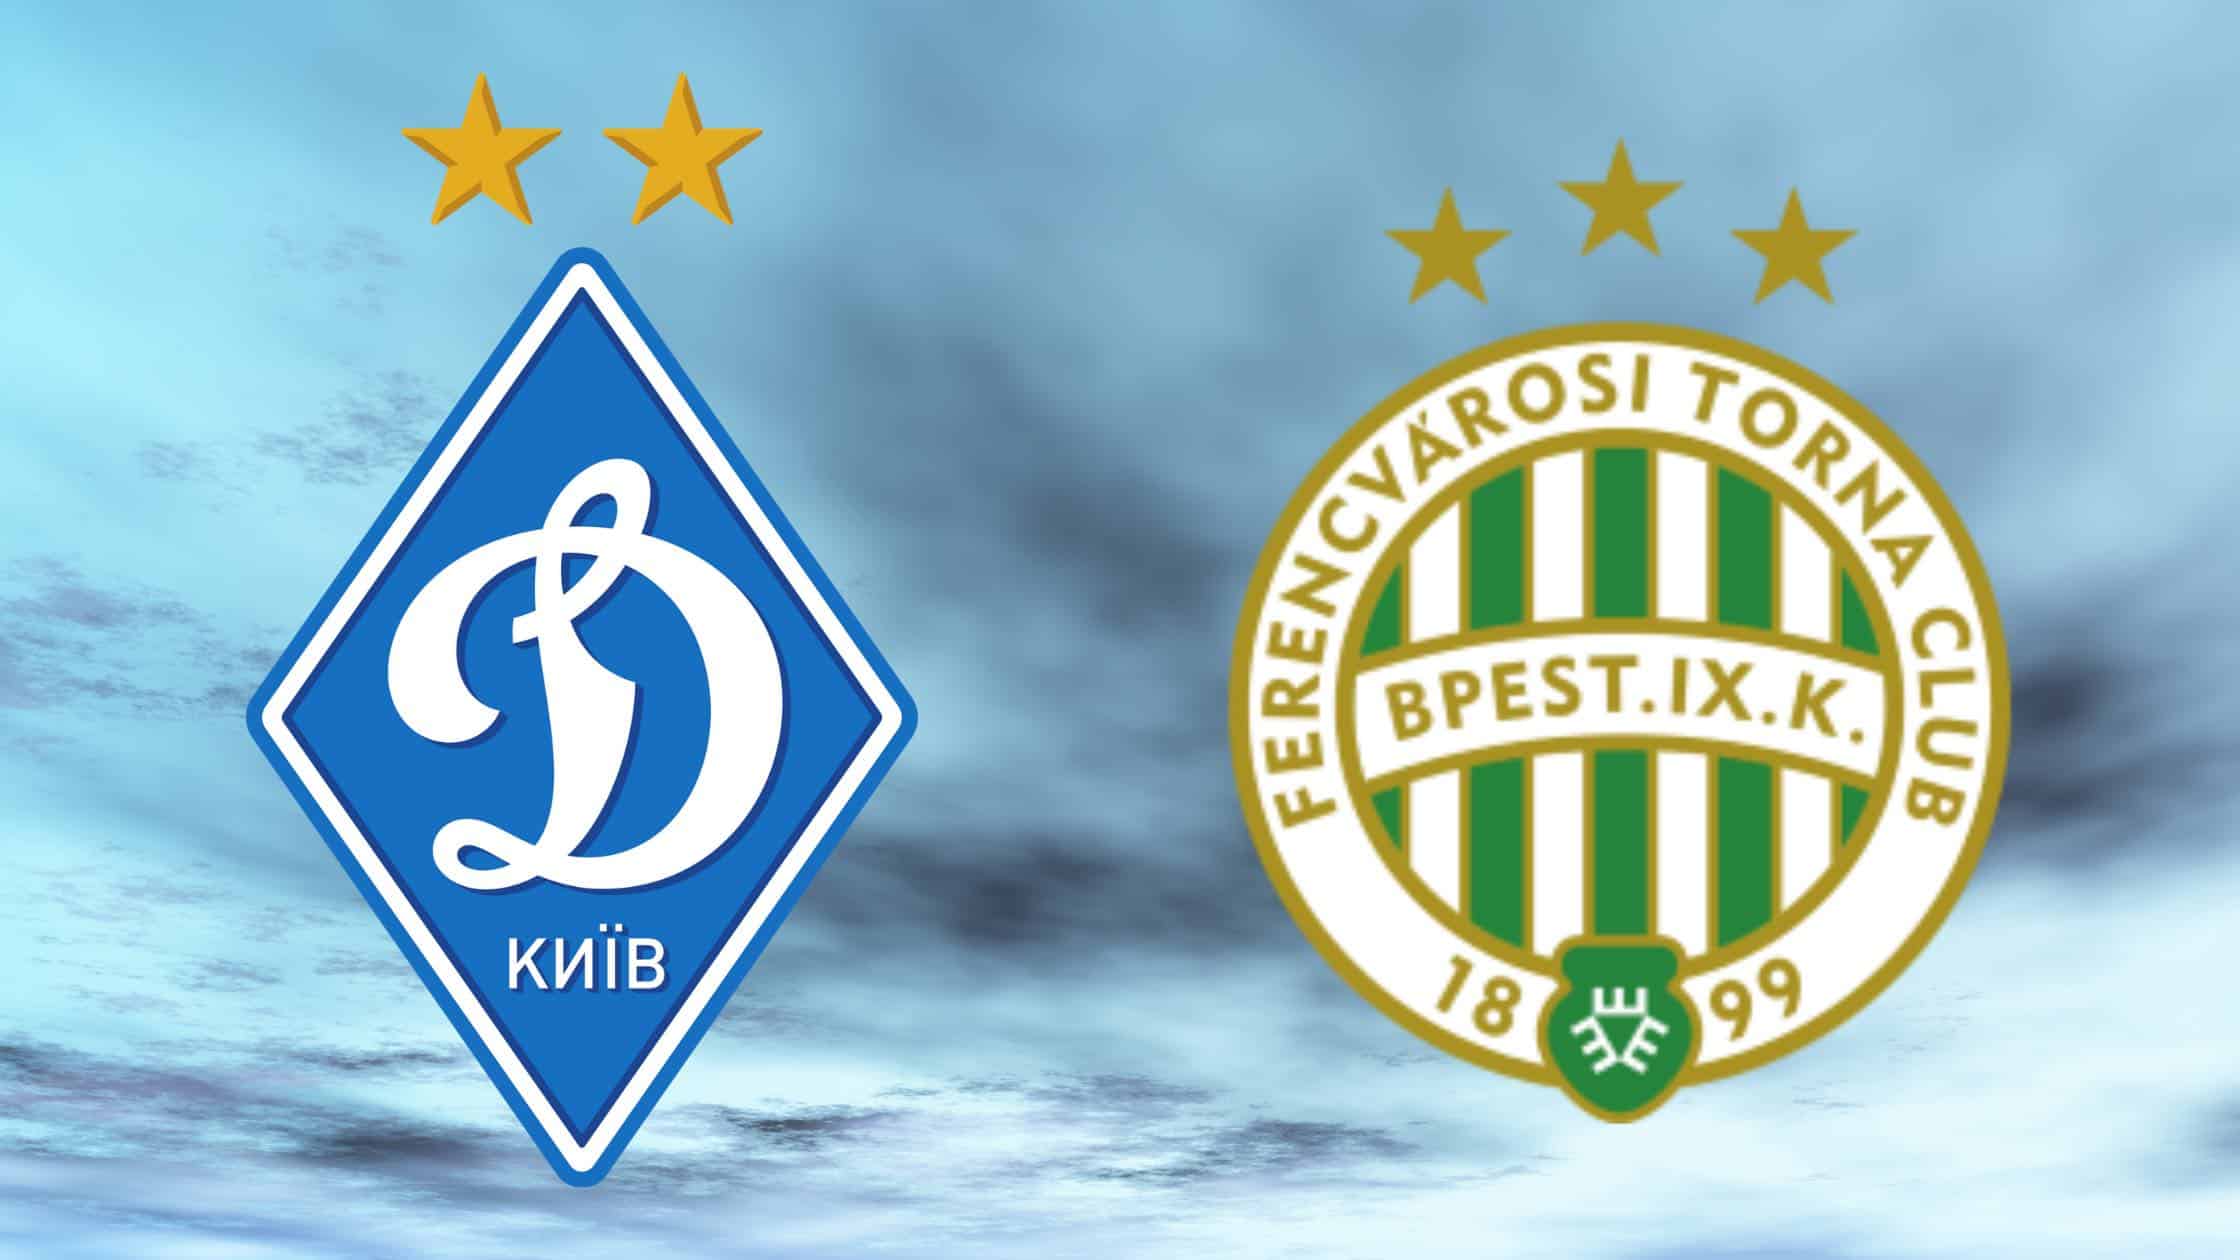 Dynamo Kiew und Ferencvaros Budapest treffen in der Champions-League-Gruppenphase 2020/21 aufeinander. Informationen zur TV-Übertragung (heute & live), zum Live-Stream und zur Champions-League-Konferenz.